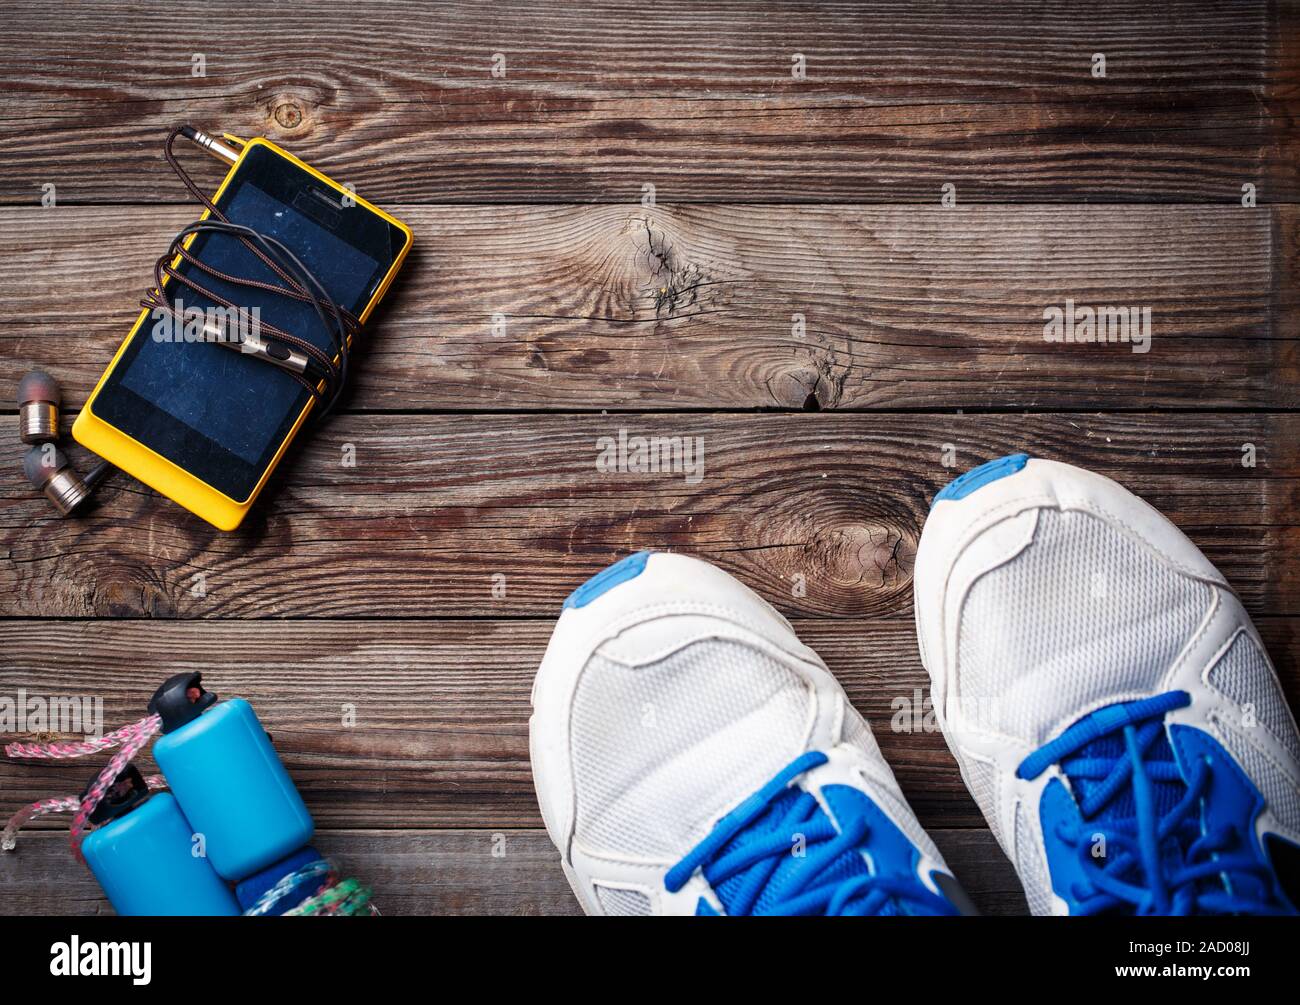 Attrezzature sportive - scarpe da ginnastica, corda, smartphone e cuffie. Sport background sul pavimento di legno, vista dall'alto. Foto Stock